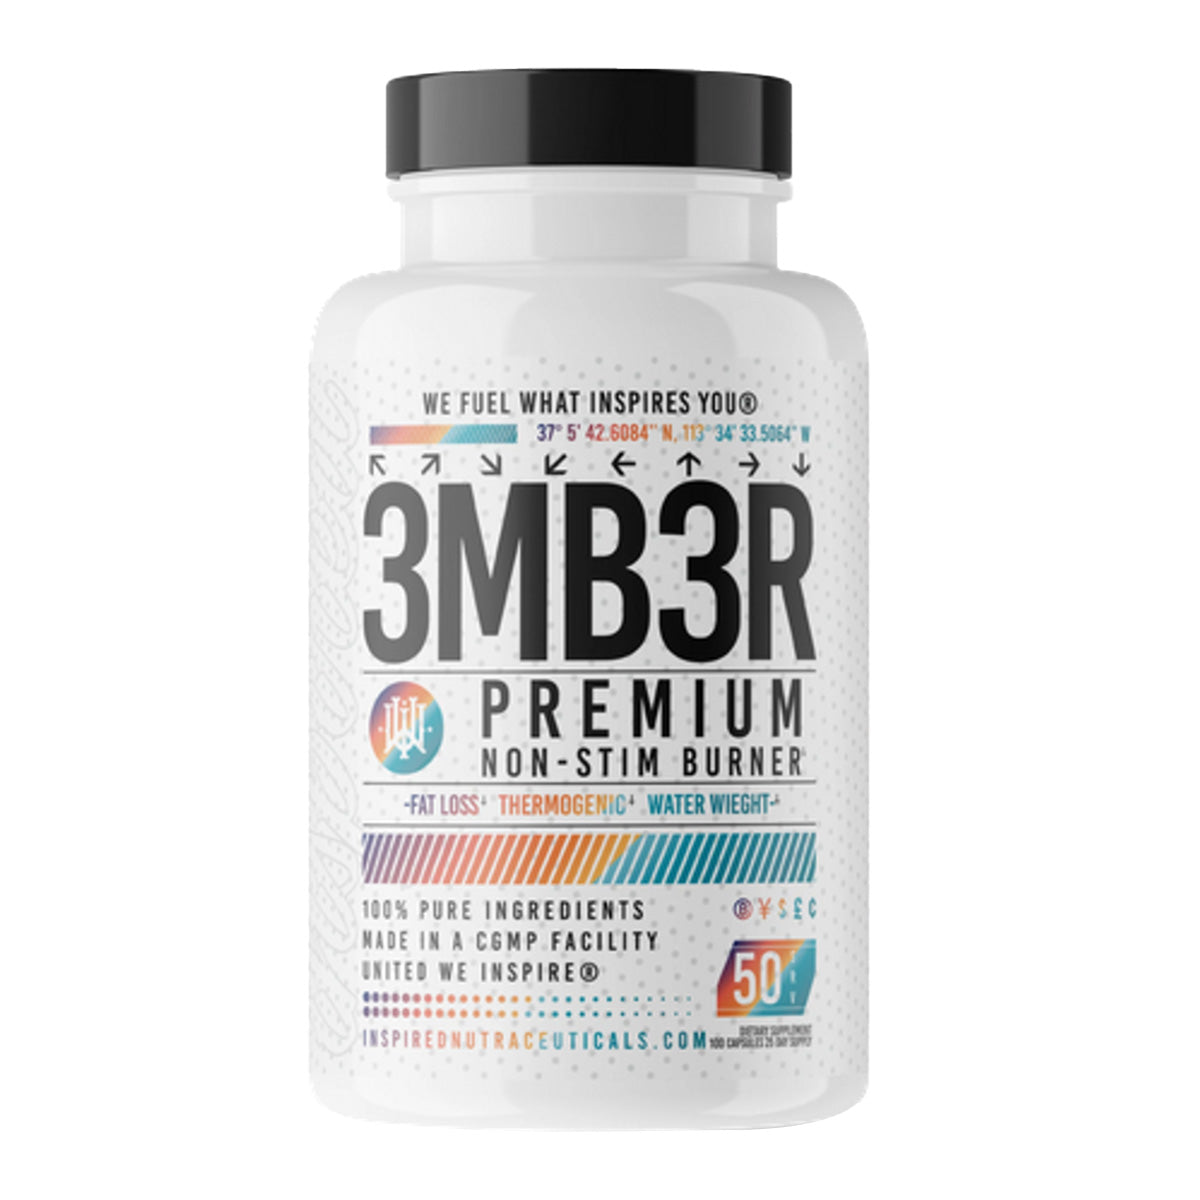 3MB3R Premium Non-Stim